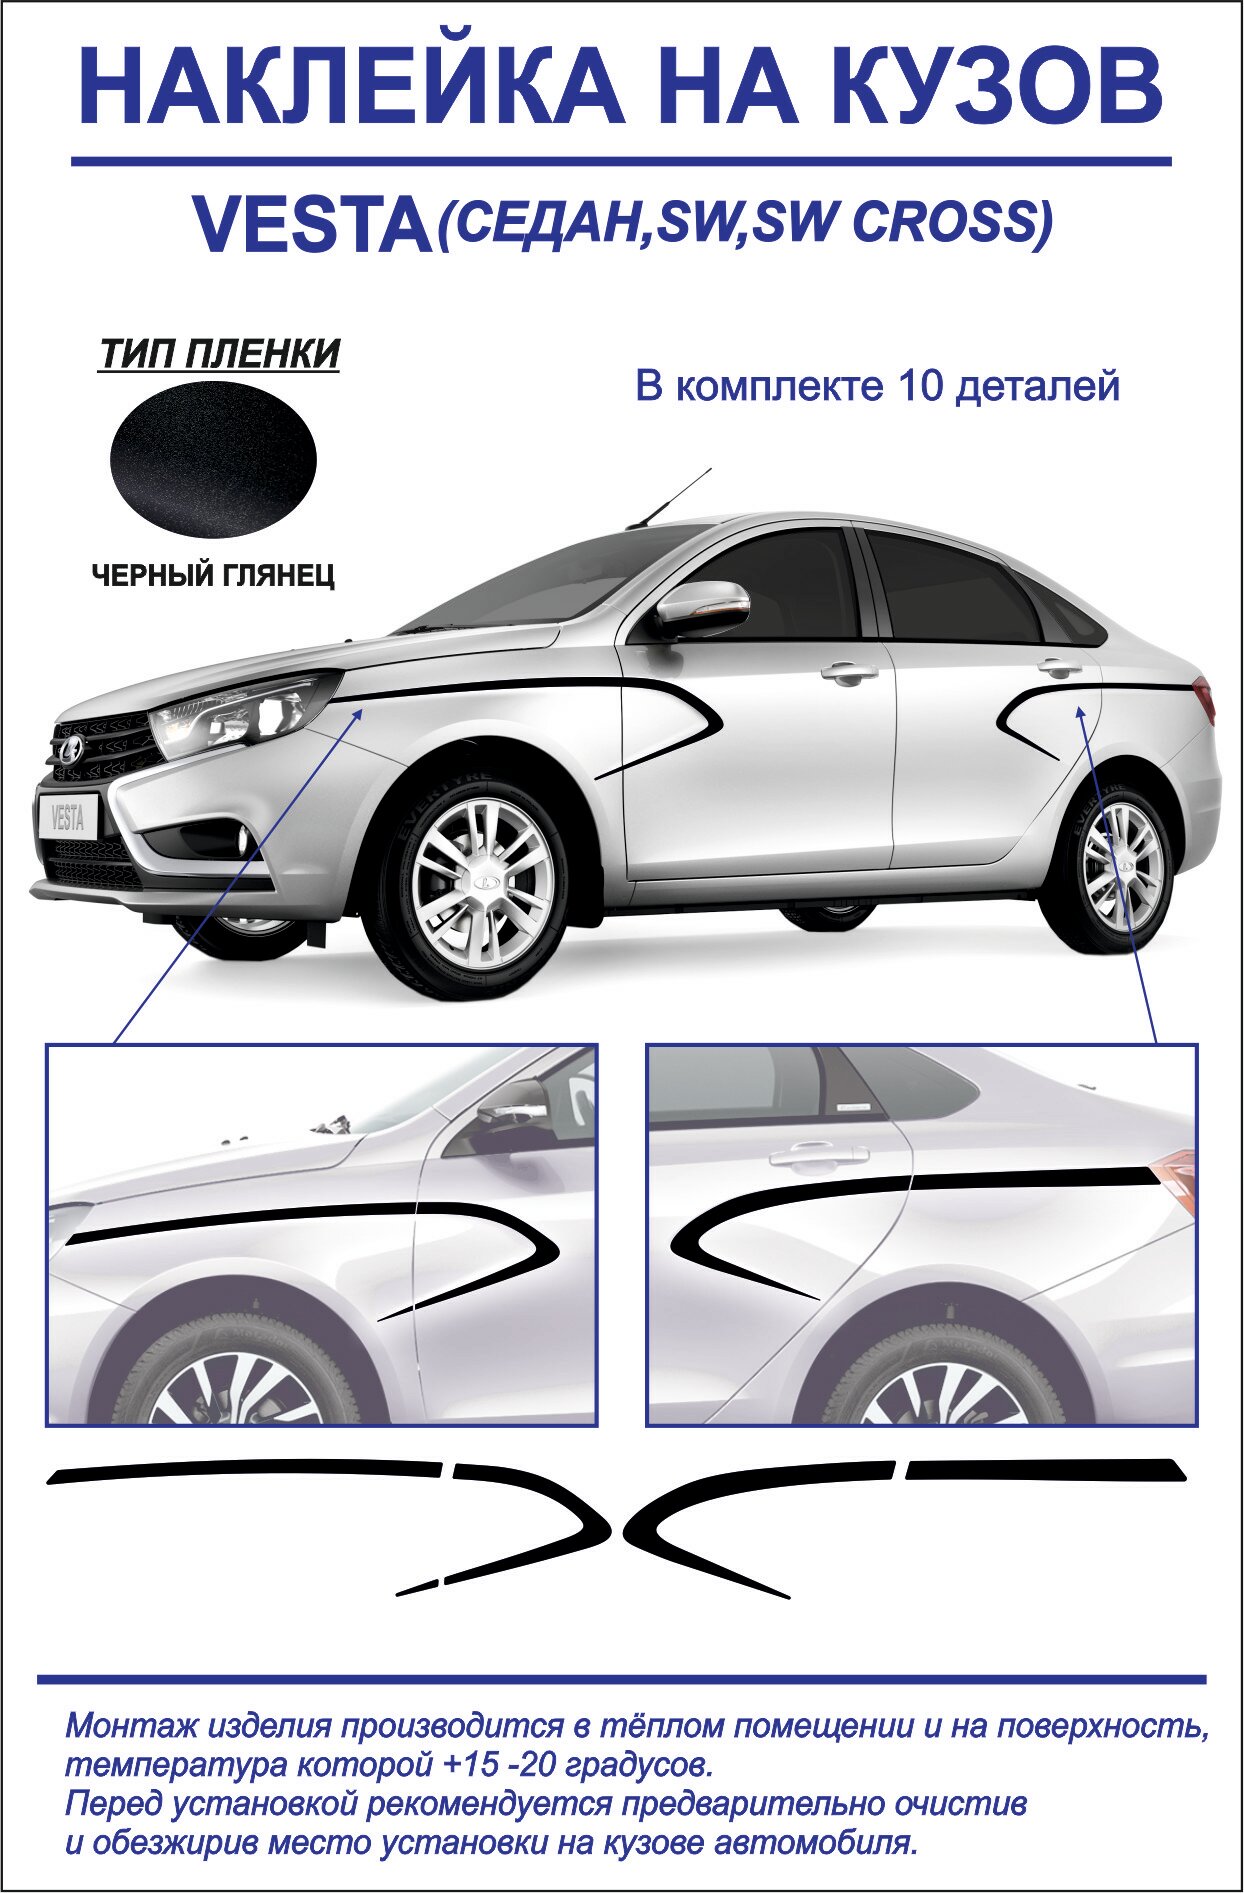 Тюнинг-наклейка на кузов Lada Vesta седан/седан cross, sw, sw cross, sport (черный глянец)10 деталей